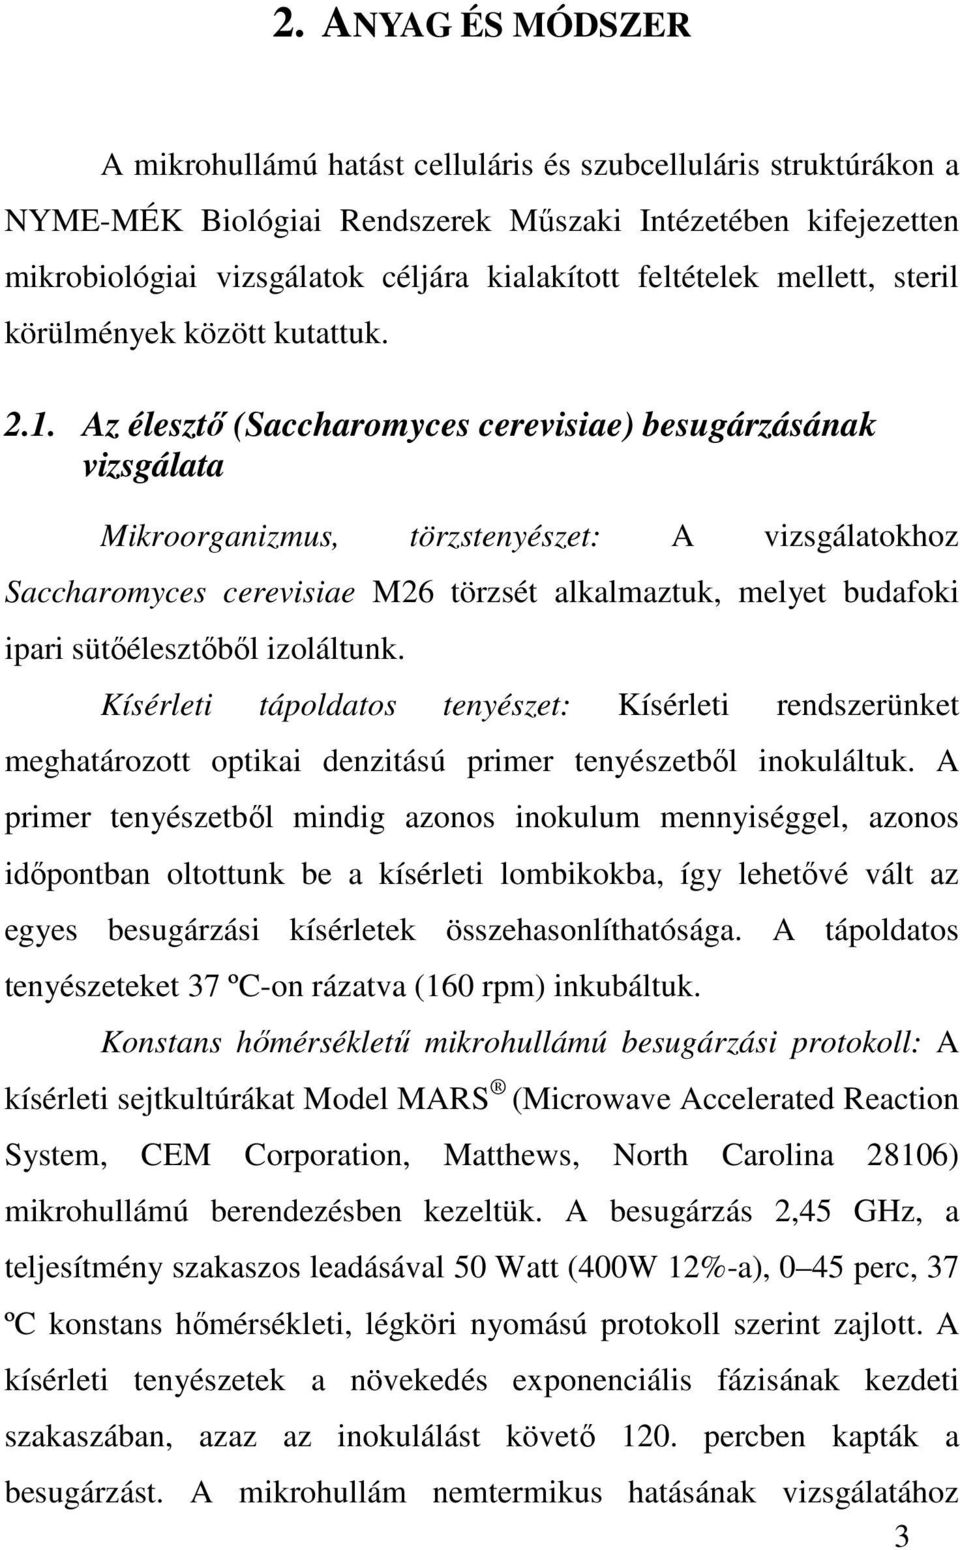 Az élesztı (Saccharomyces cerevisiae) besugárzásának vizsgálata Mikroorganizmus, törzstenyészet: A vizsgálatokhoz Saccharomyces cerevisiae M26 törzsét alkalmaztuk, melyet budafoki ipari